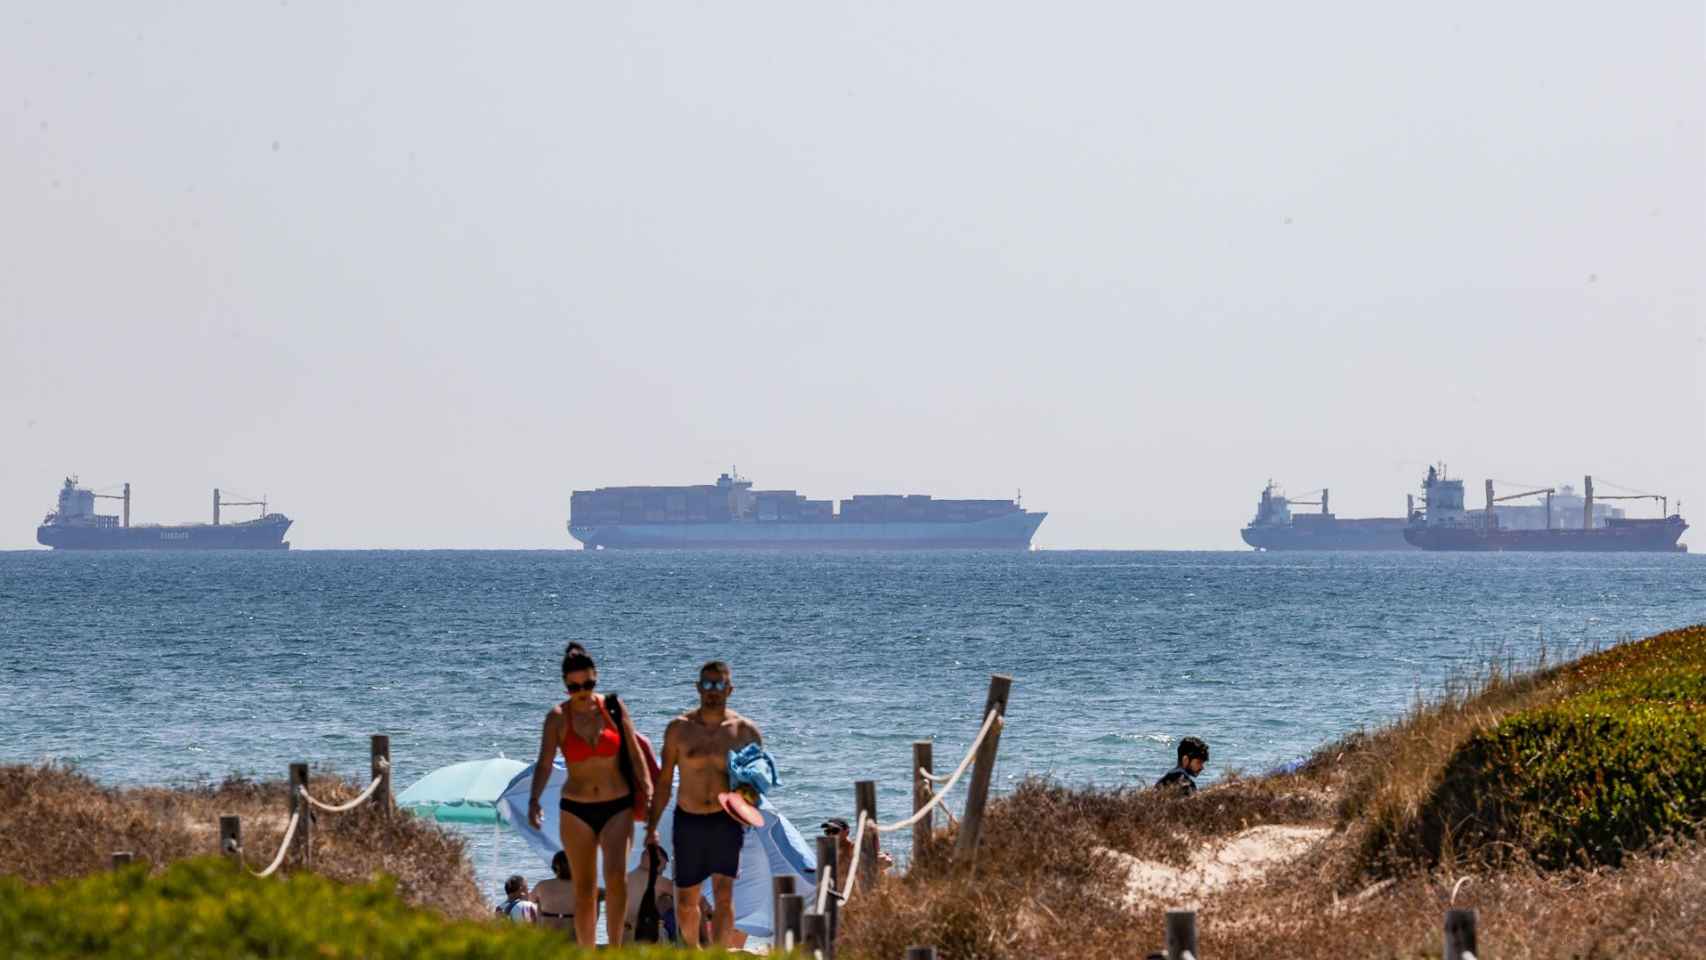 Varios turistas en una playa de Valencia, con cruceros al fondo, este mes de agosto.